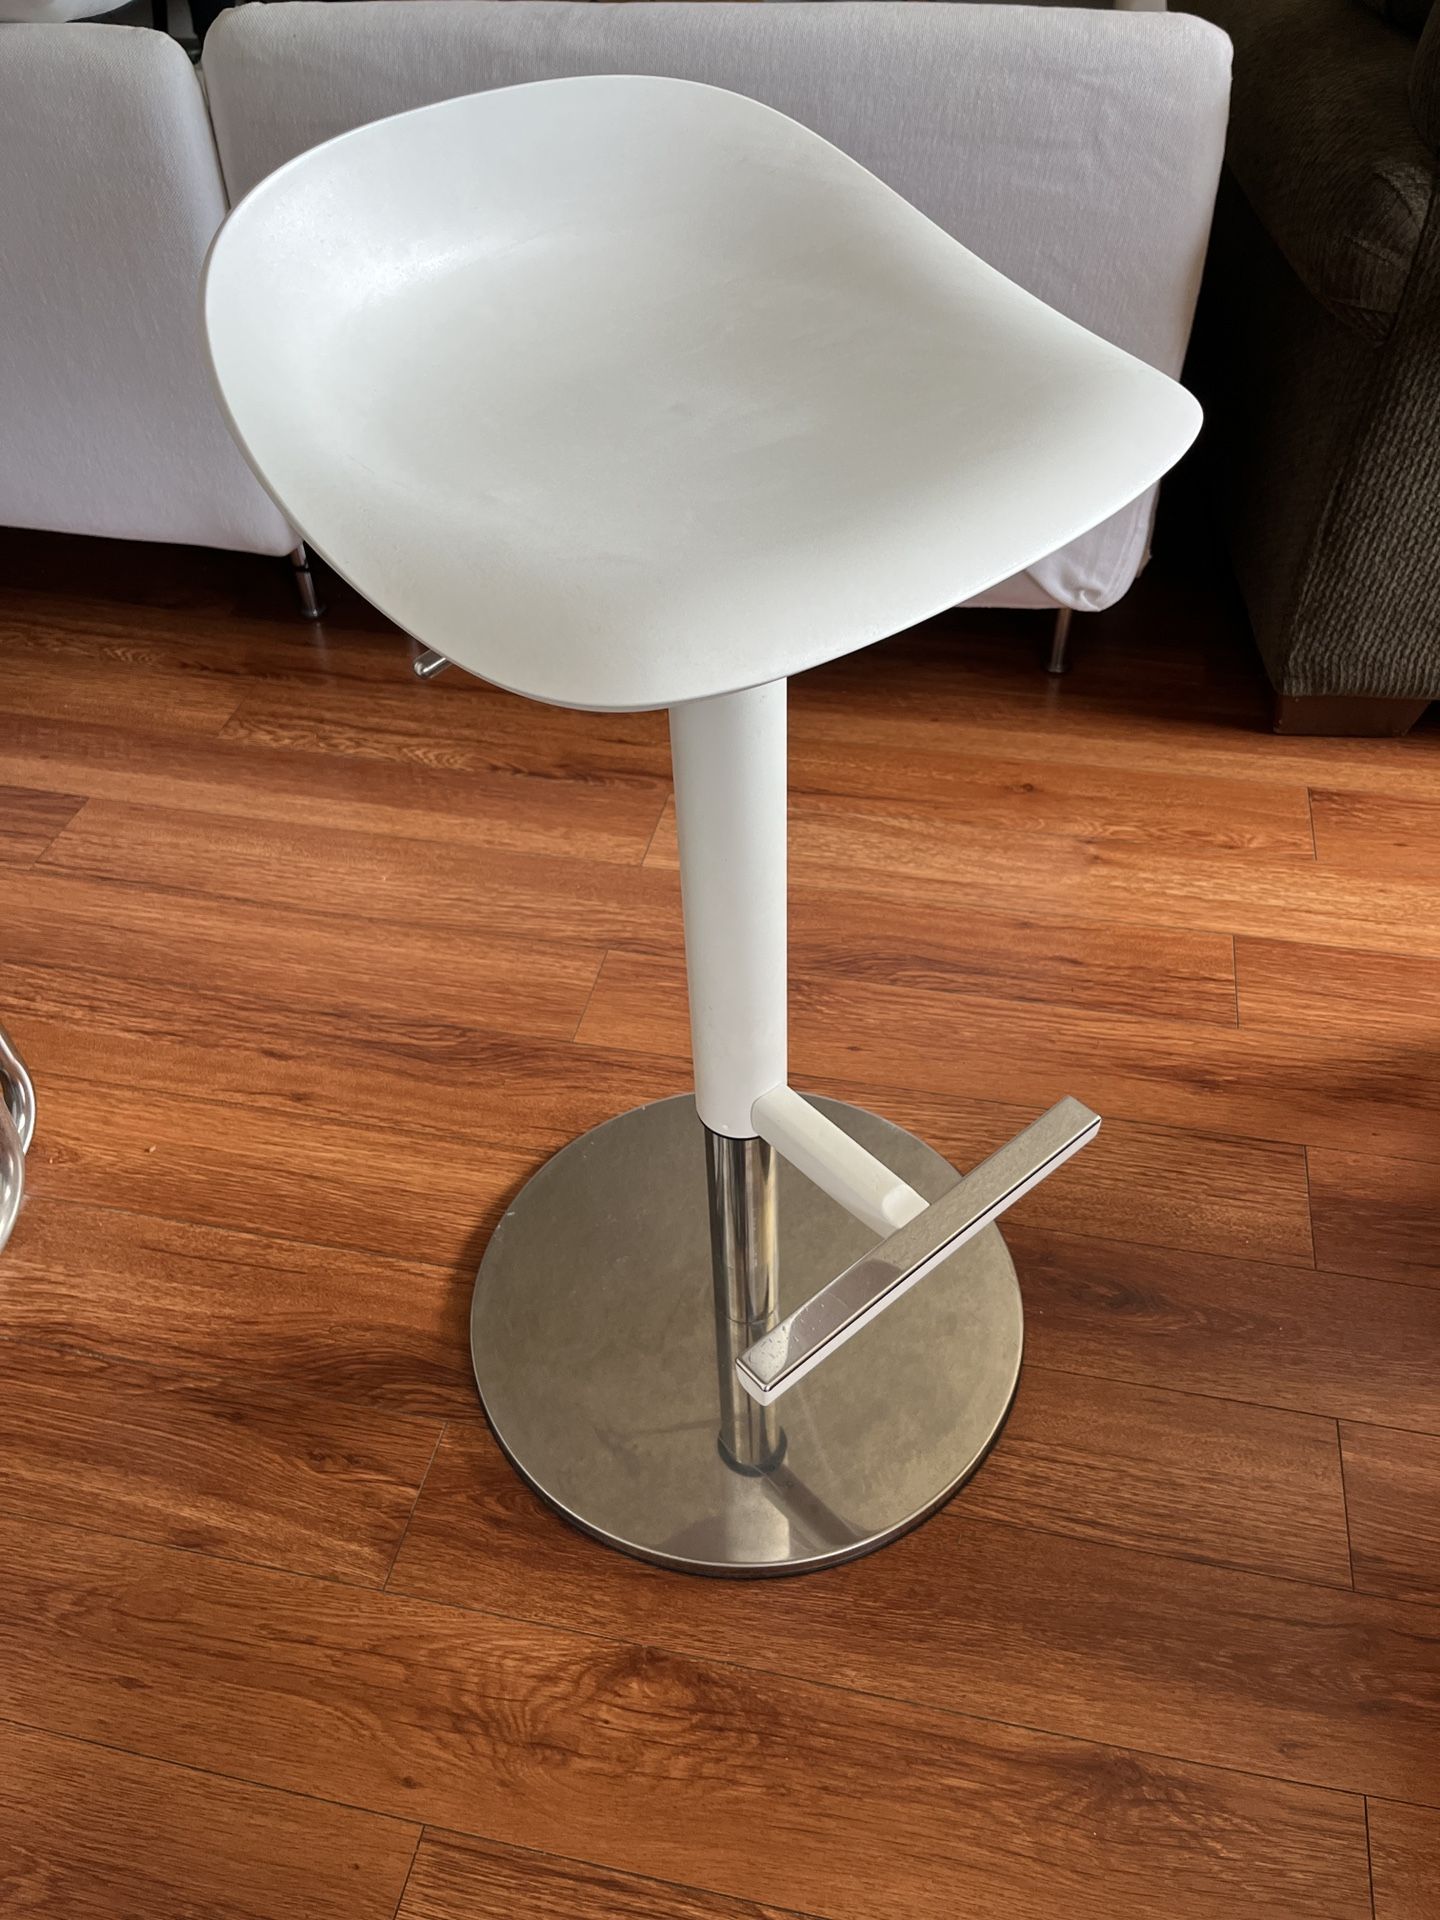 IKEA Janine bar stool